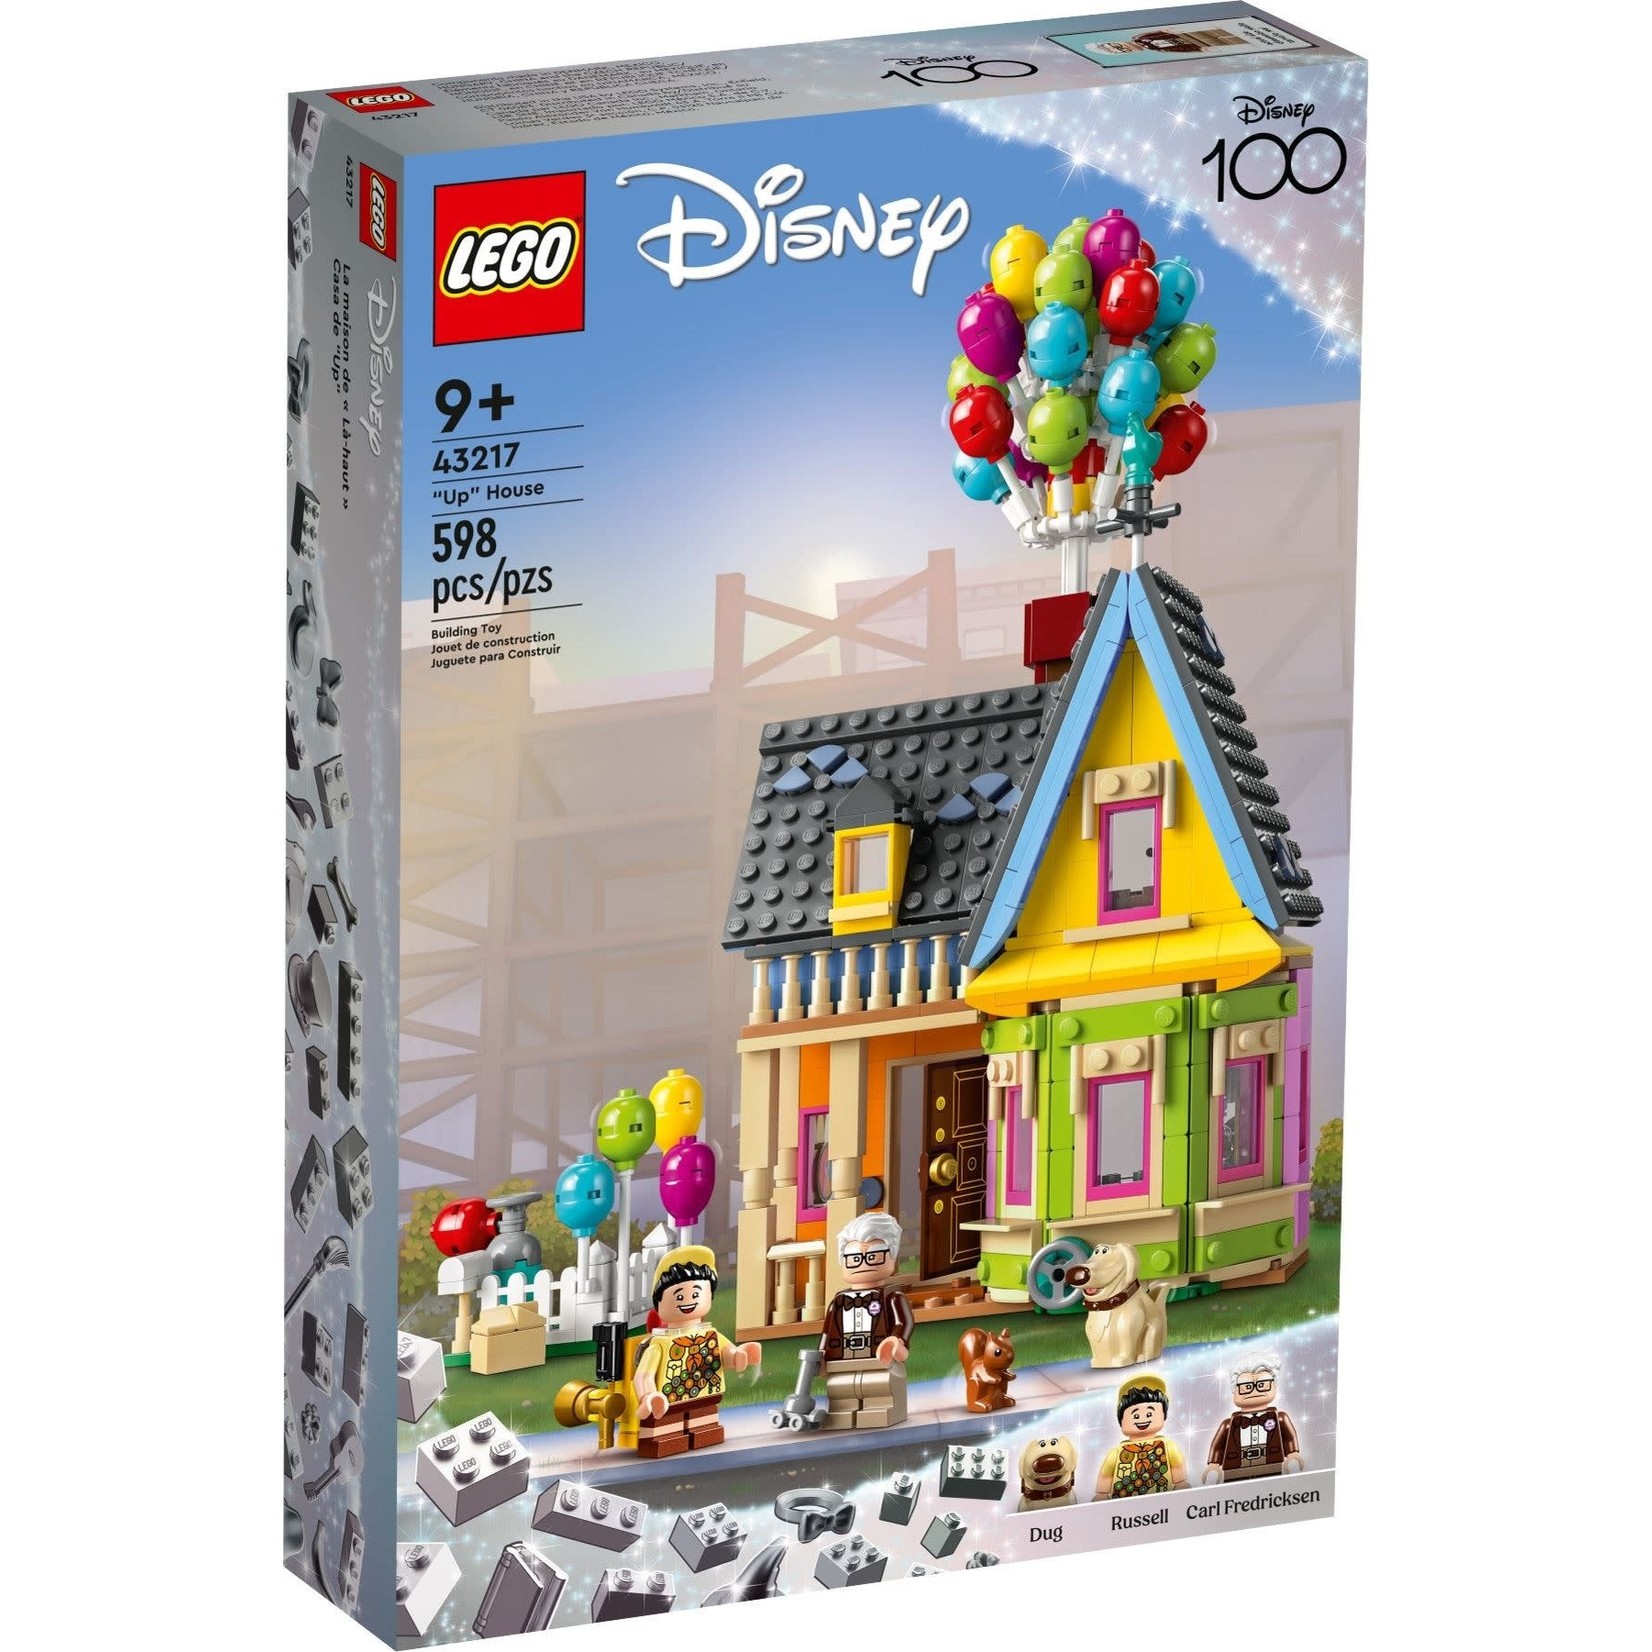 LEGO Disney Huis uit de Film 'UP' - 43217